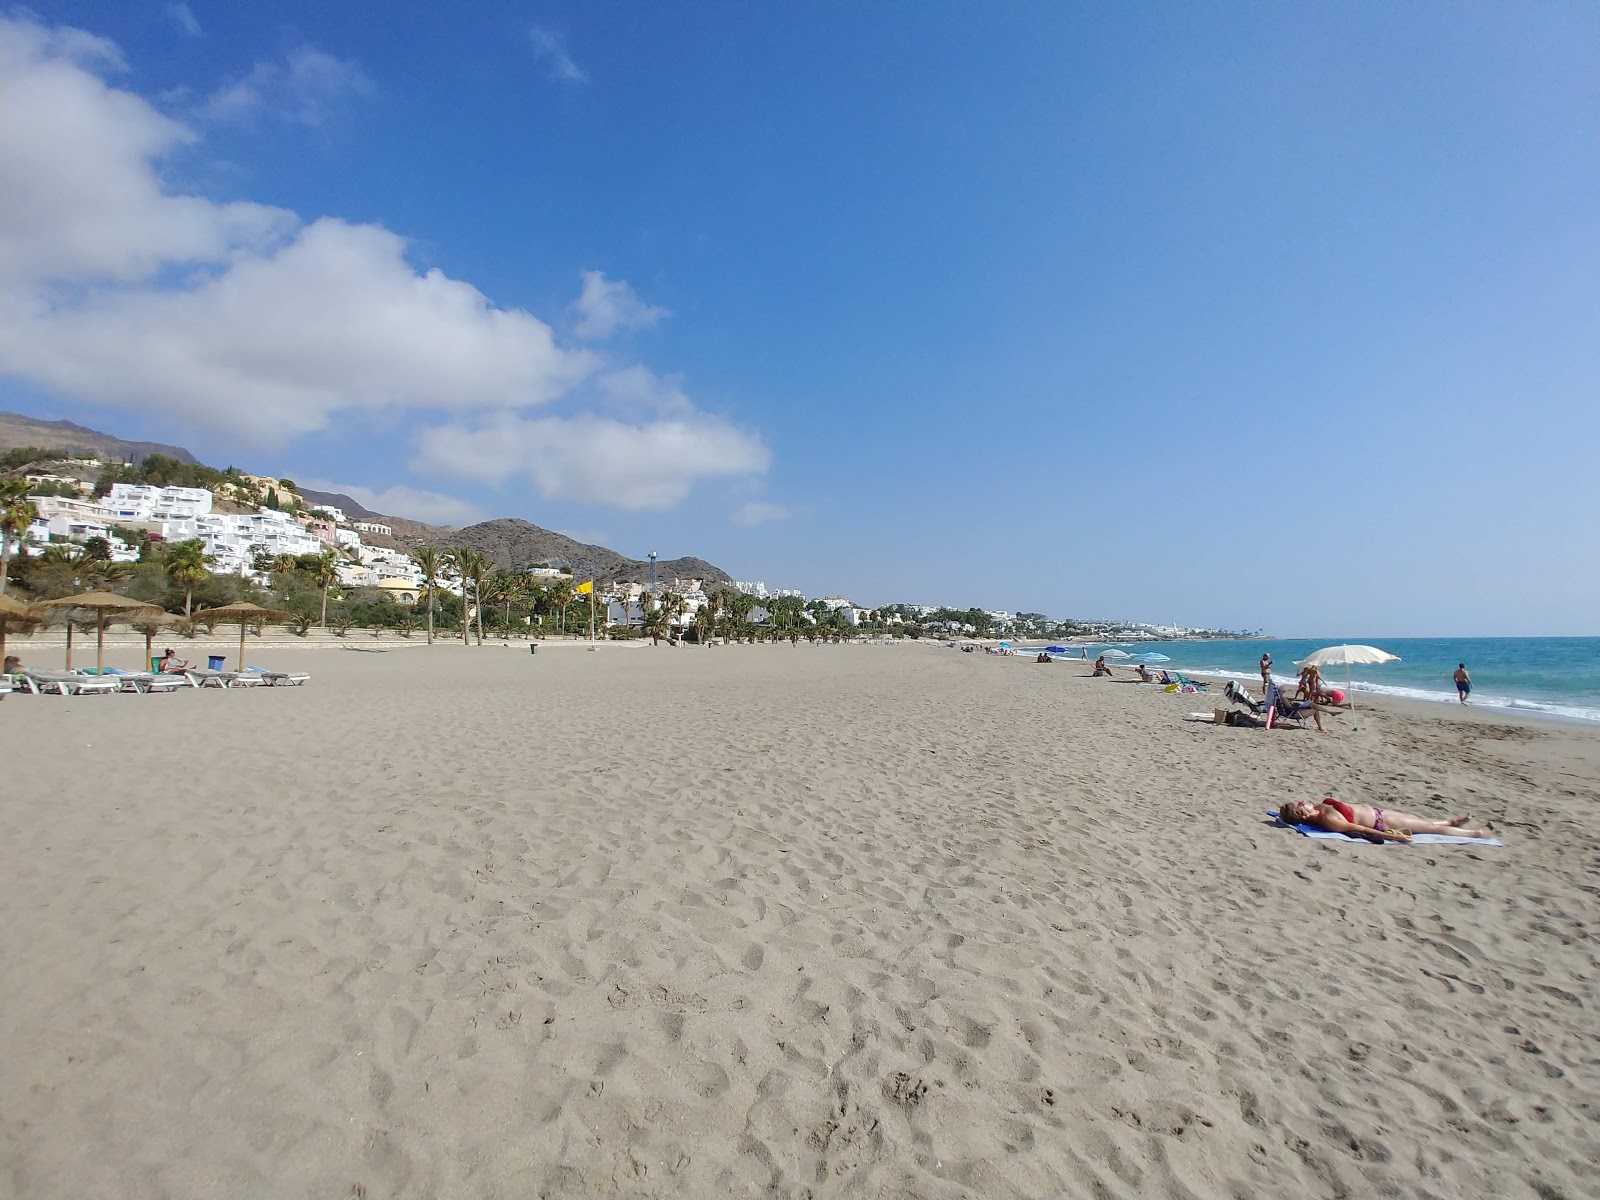 Playa de la Mena'in fotoğrafı parlak kum yüzey ile